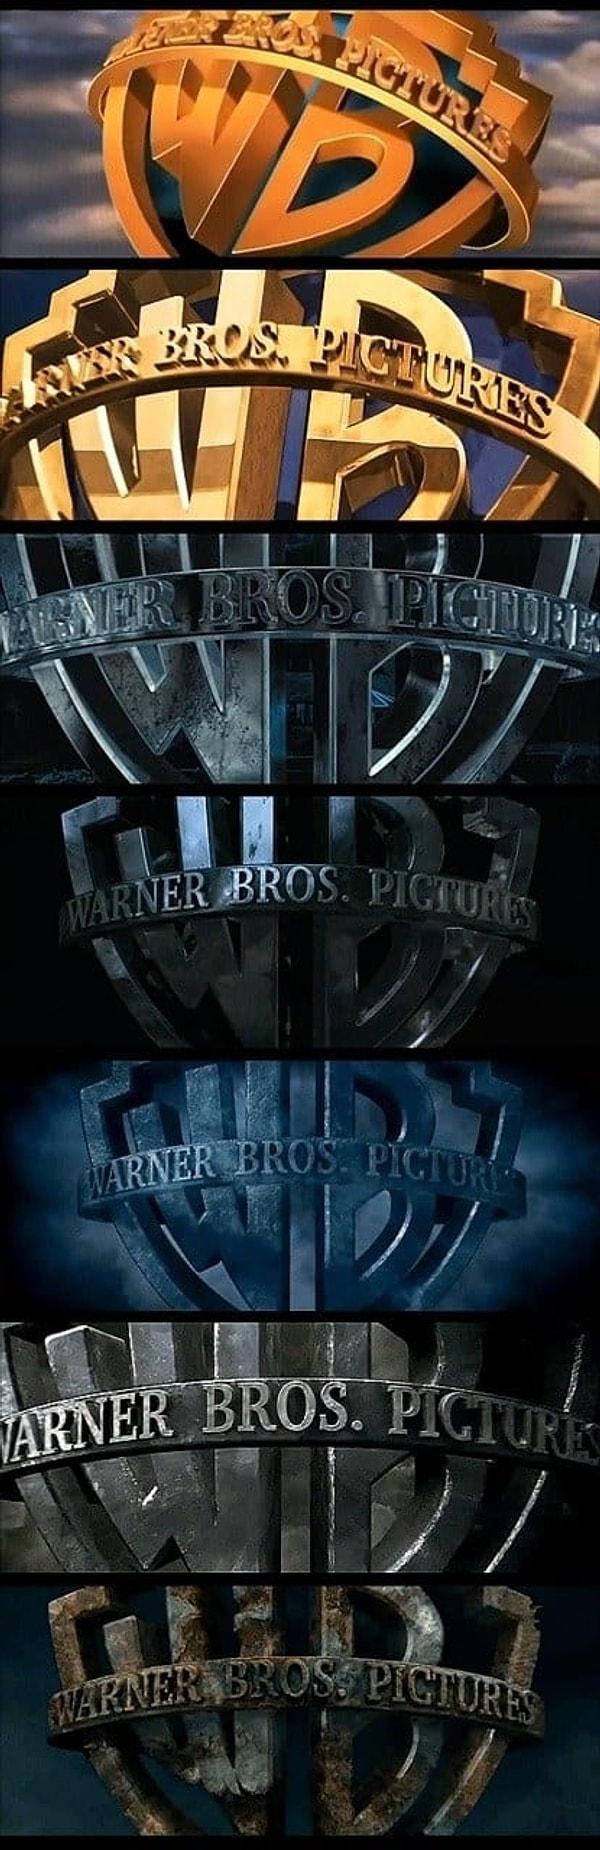 18. Ve son olarak, seri ilerledikçe filmlerdeki hikayeler daha karanlık bir hal aldığı için başlangıçtaki Waner Bros. logoları da bu temaya uyum sağlayacak şekilde tasarlanmıştı.